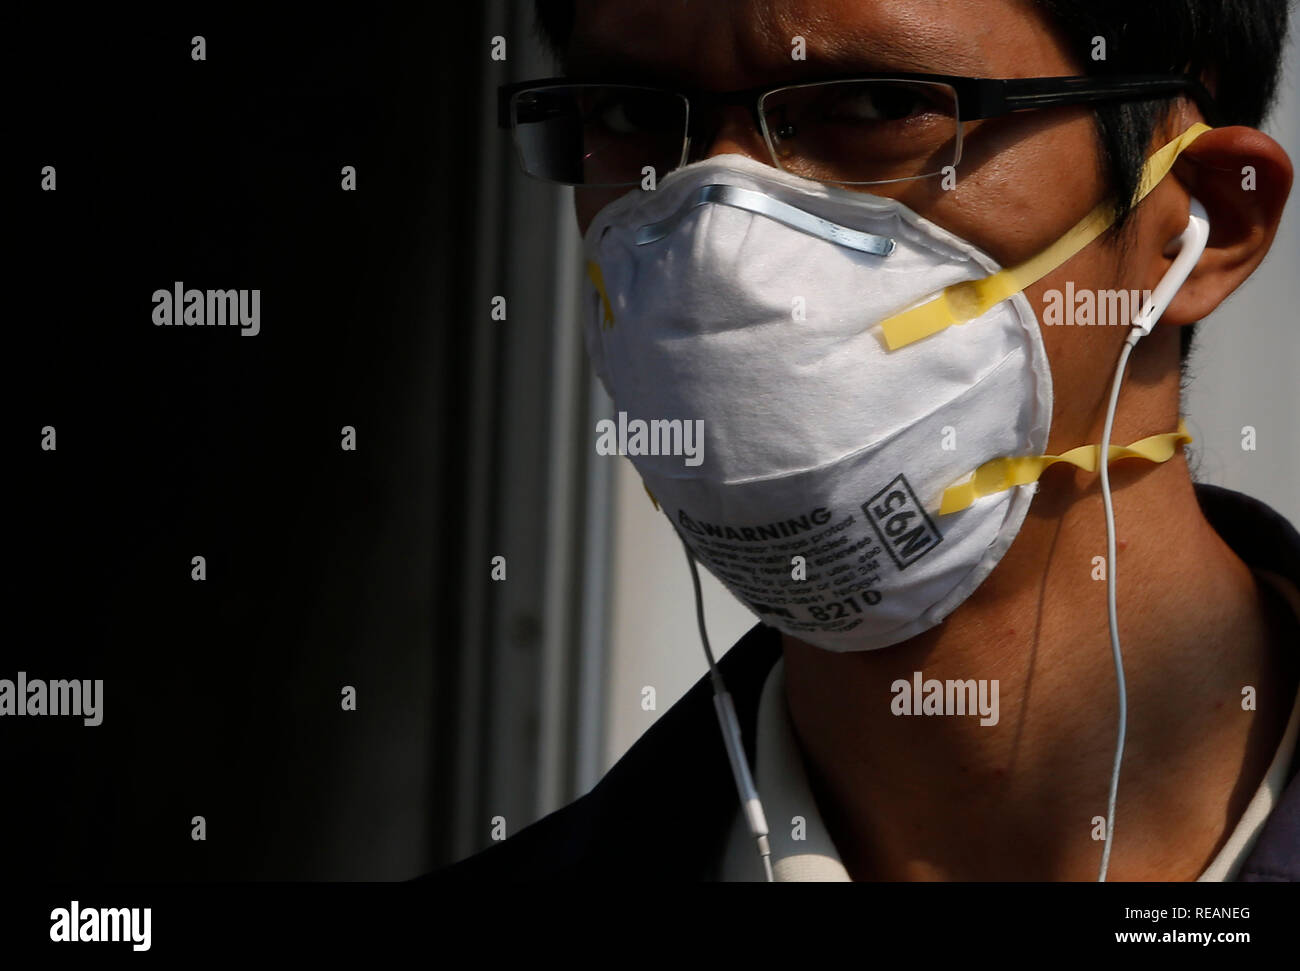 Un homme portant un masque durant une journée de mauvaise qualité de l'air à Bangkok. La pollution de l'air du Bangkok aggravé la crise aujourd'hui, comme prévu, avec plusieurs endroits le long des routes principales et 16 autres régions faisant état des niveaux dangereux de PM2,5, les particules en suspension dans l'air dangereuse pour la santé d'2,5 microns ou moins de diamètre. Banque D'Images